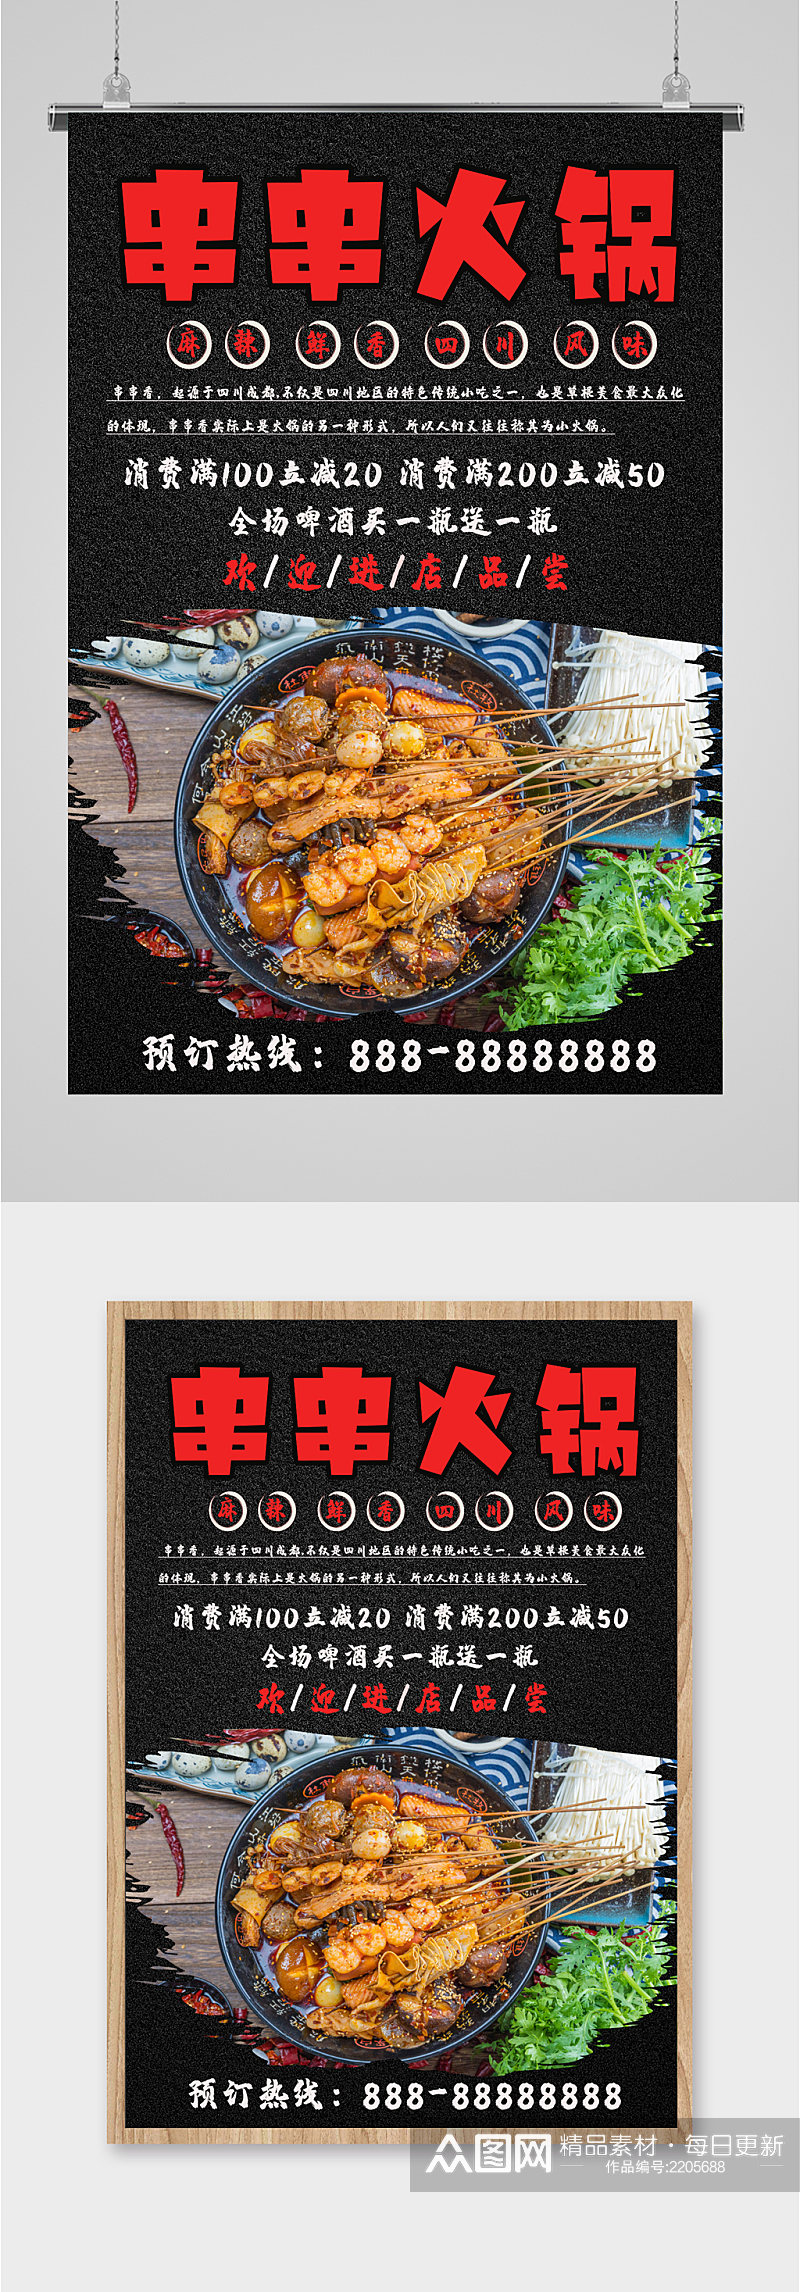 串串火锅美食海报素材